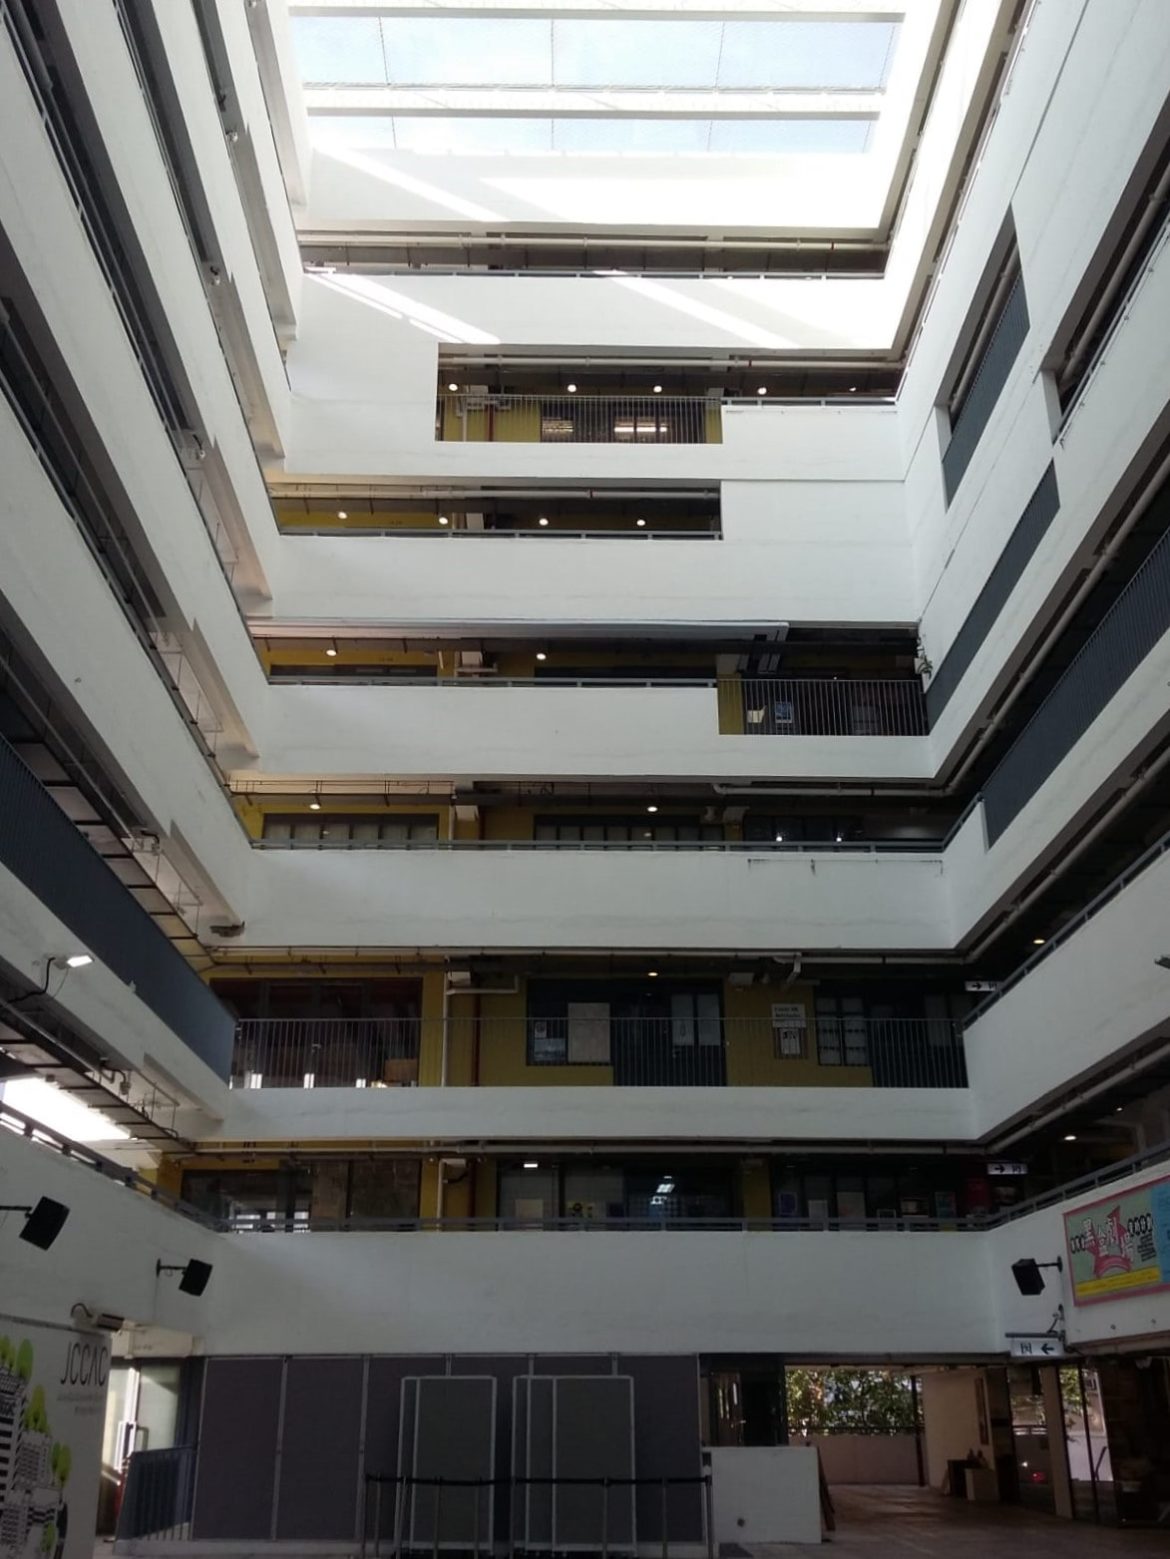 Jockey_Club_Arts_Centre_Interior_Courtyard_HongKong